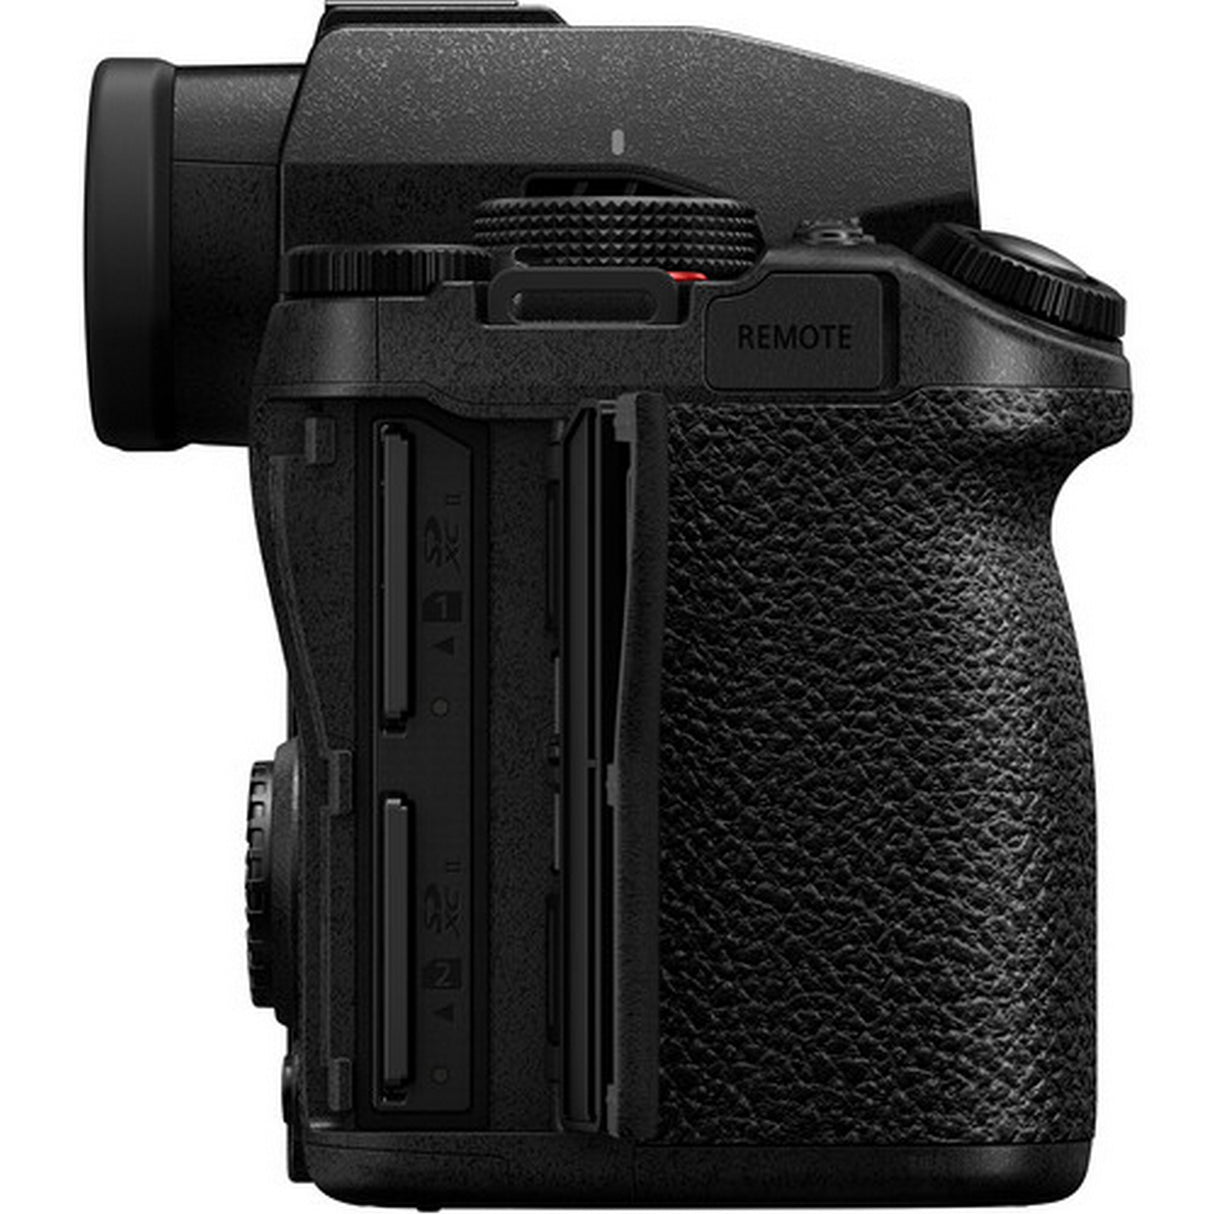 Panasonic LUMIX DC-S5M2X Full Frame Mirrorless Camera, Body Only